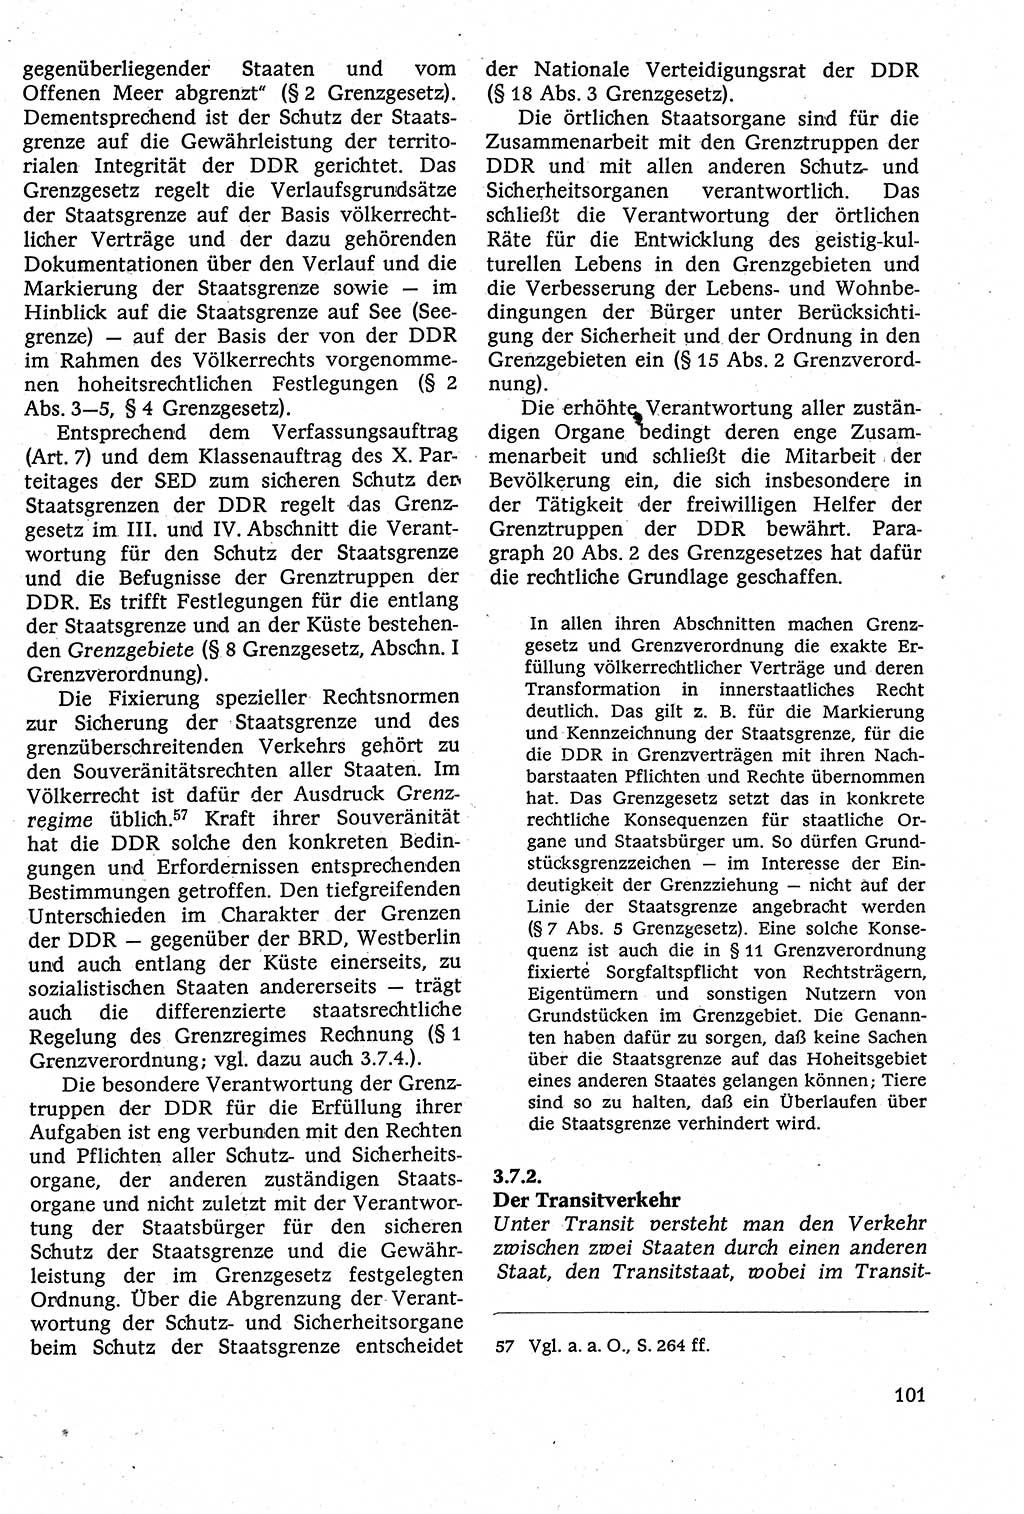 Staatsrecht der DDR [Deutsche Demokratische Republik (DDR)], Lehrbuch 1984, Seite 101 (St.-R. DDR Lb. 1984, S. 101)